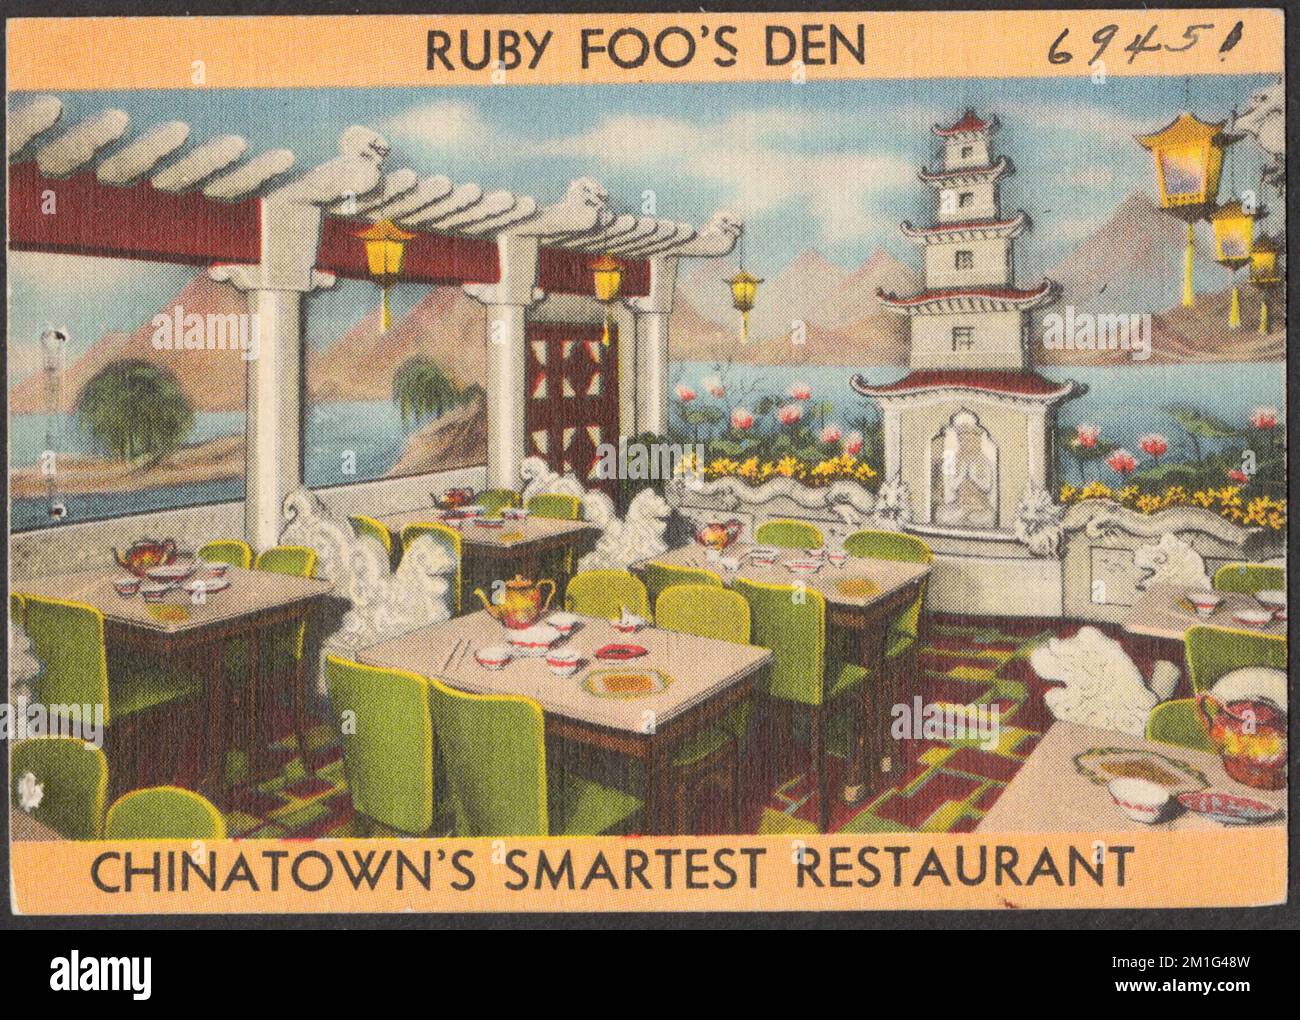 Ruby Foo's Den, il ristorante più intelligente di Chinatown, ristoranti, Tichnor Brothers Collection, cartoline degli Stati Uniti Foto Stock